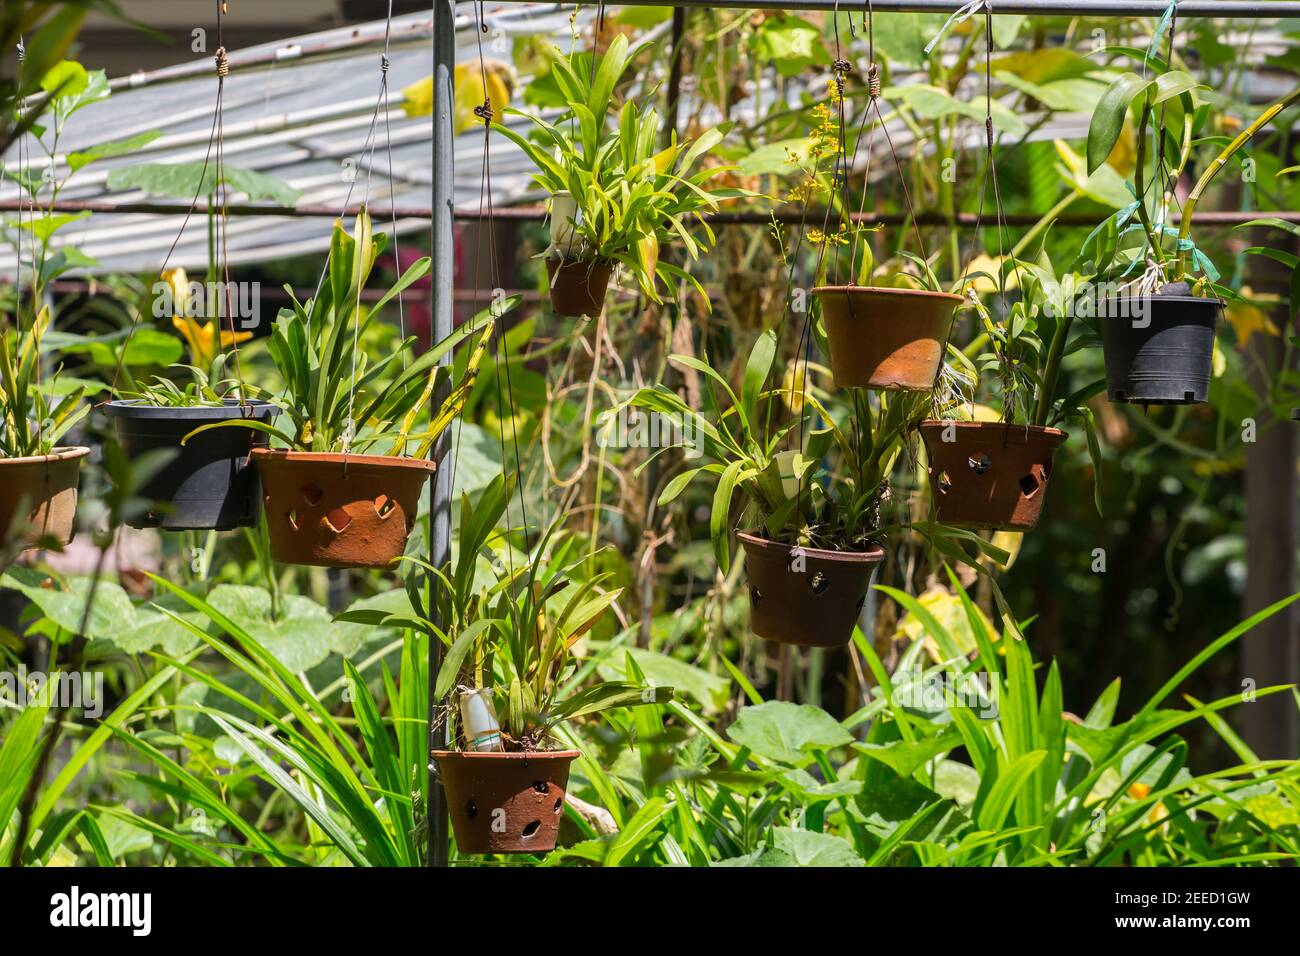 Le pentole delle piante si appendono per ricevere più luce dal sole. Inoltre può attrarre insetti e uccelli nell'aiutare la popolazione climatica e faunistica. Foto Stock